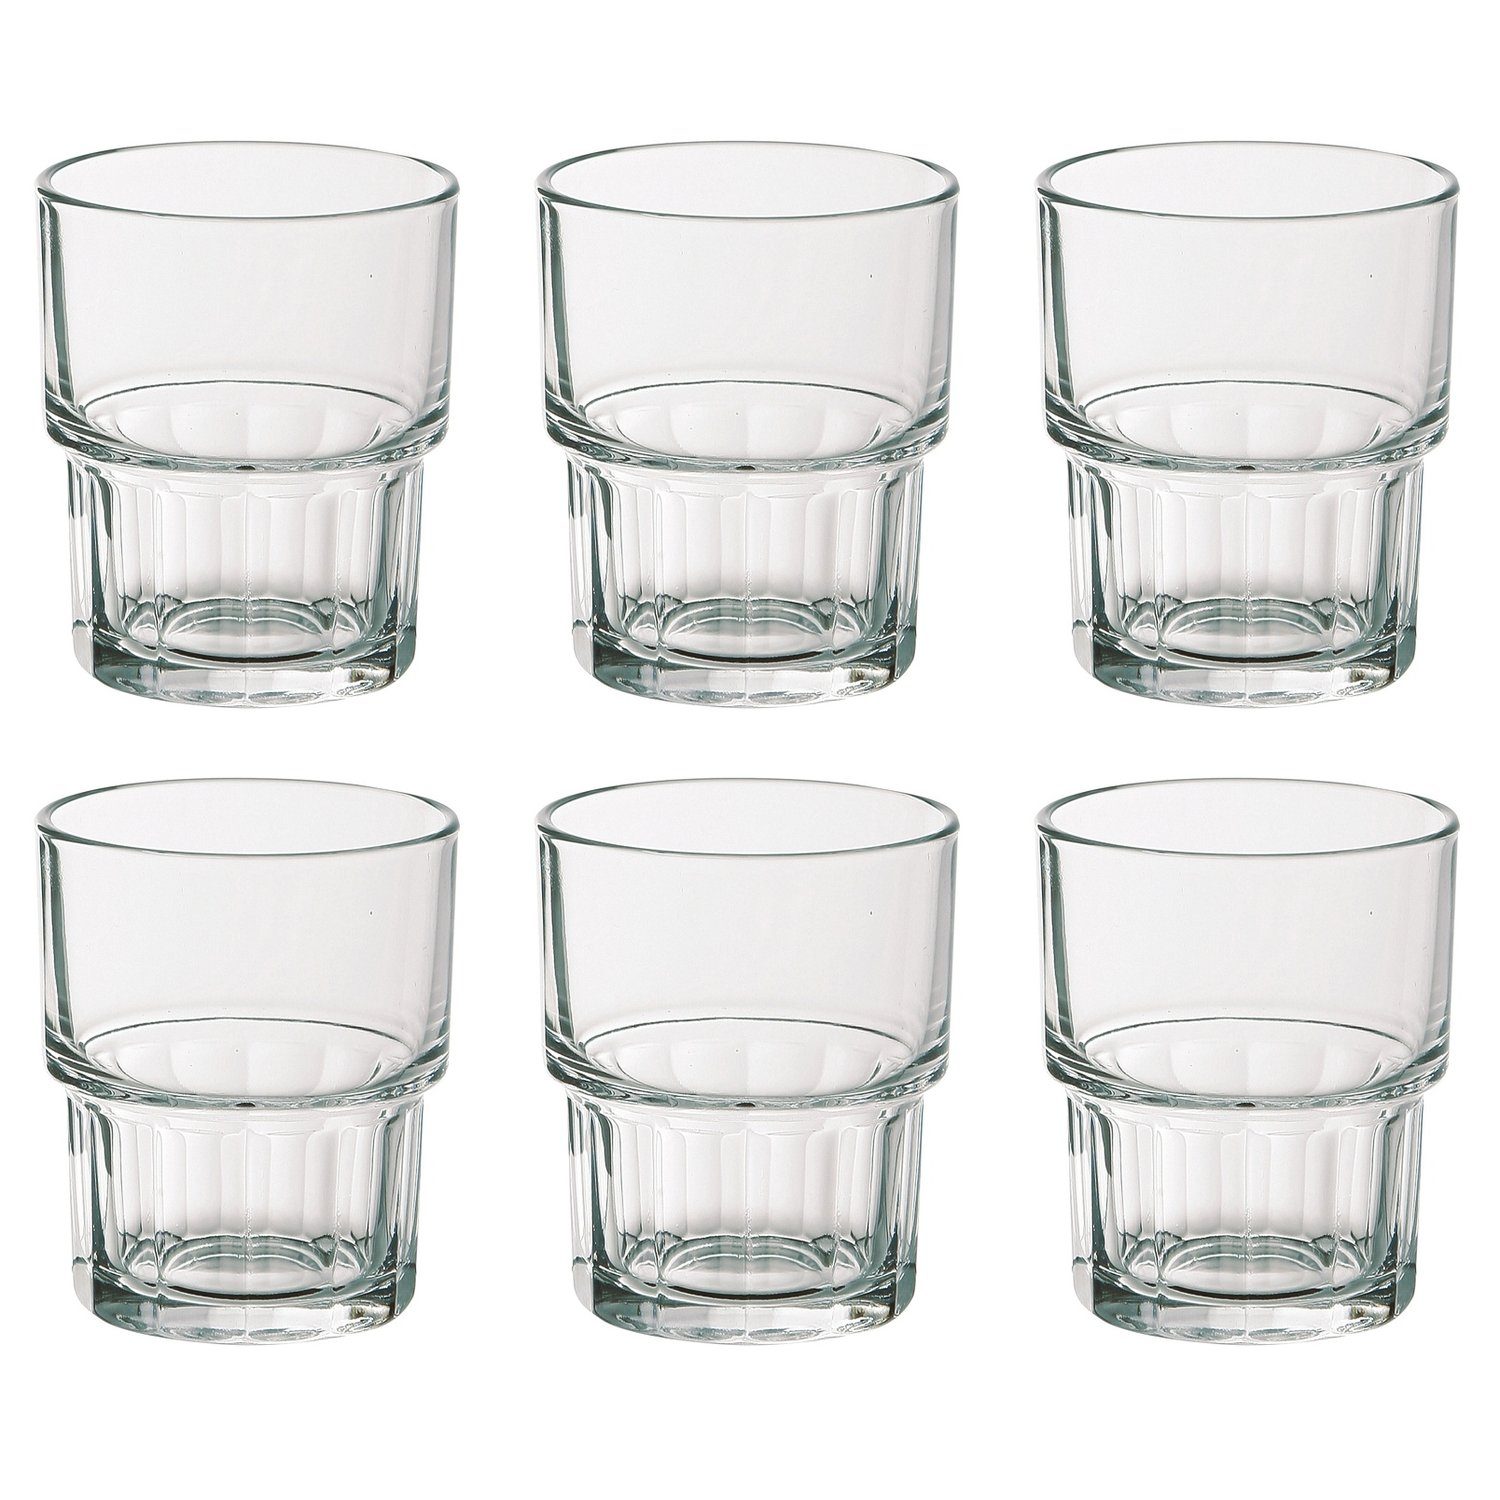 EDUPLAY Becher Glas ml, 100 Wasserglas/Saftglas